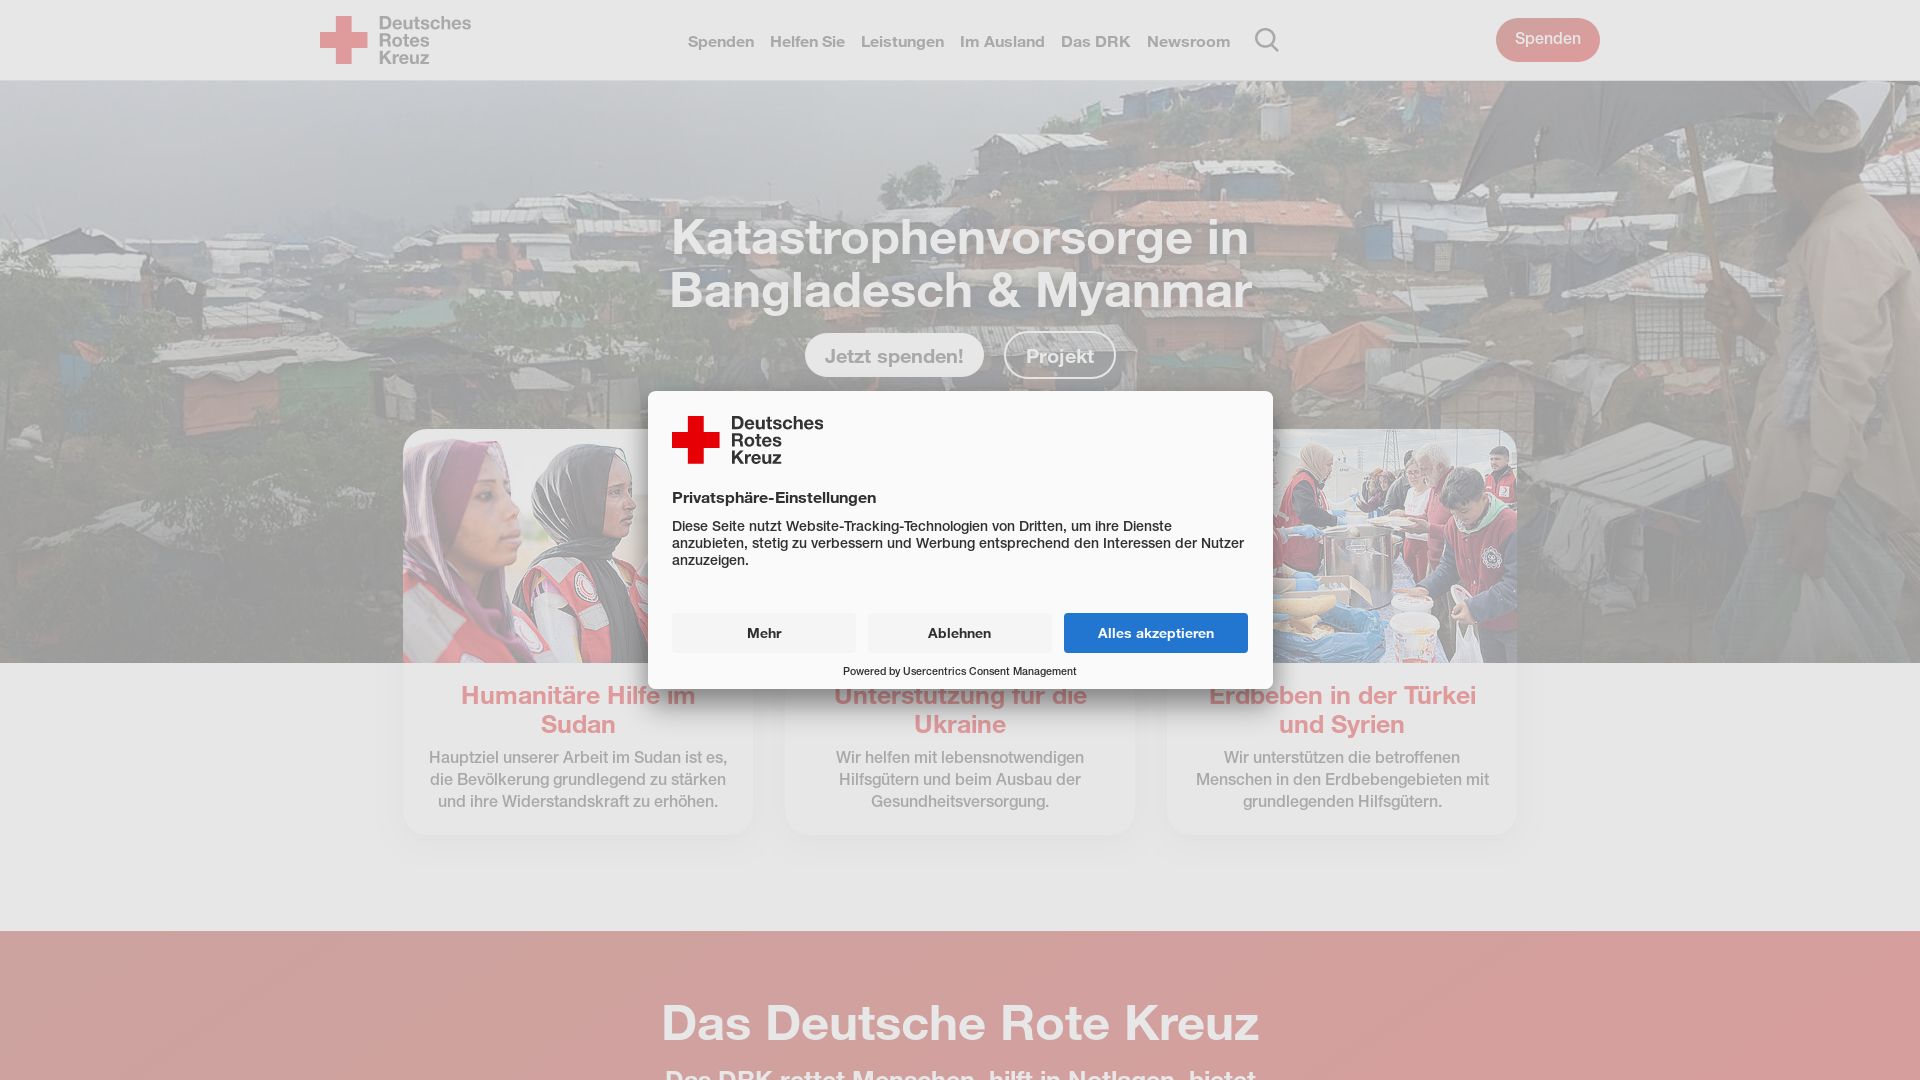 Stato del sito web drk.de è   ONLINE